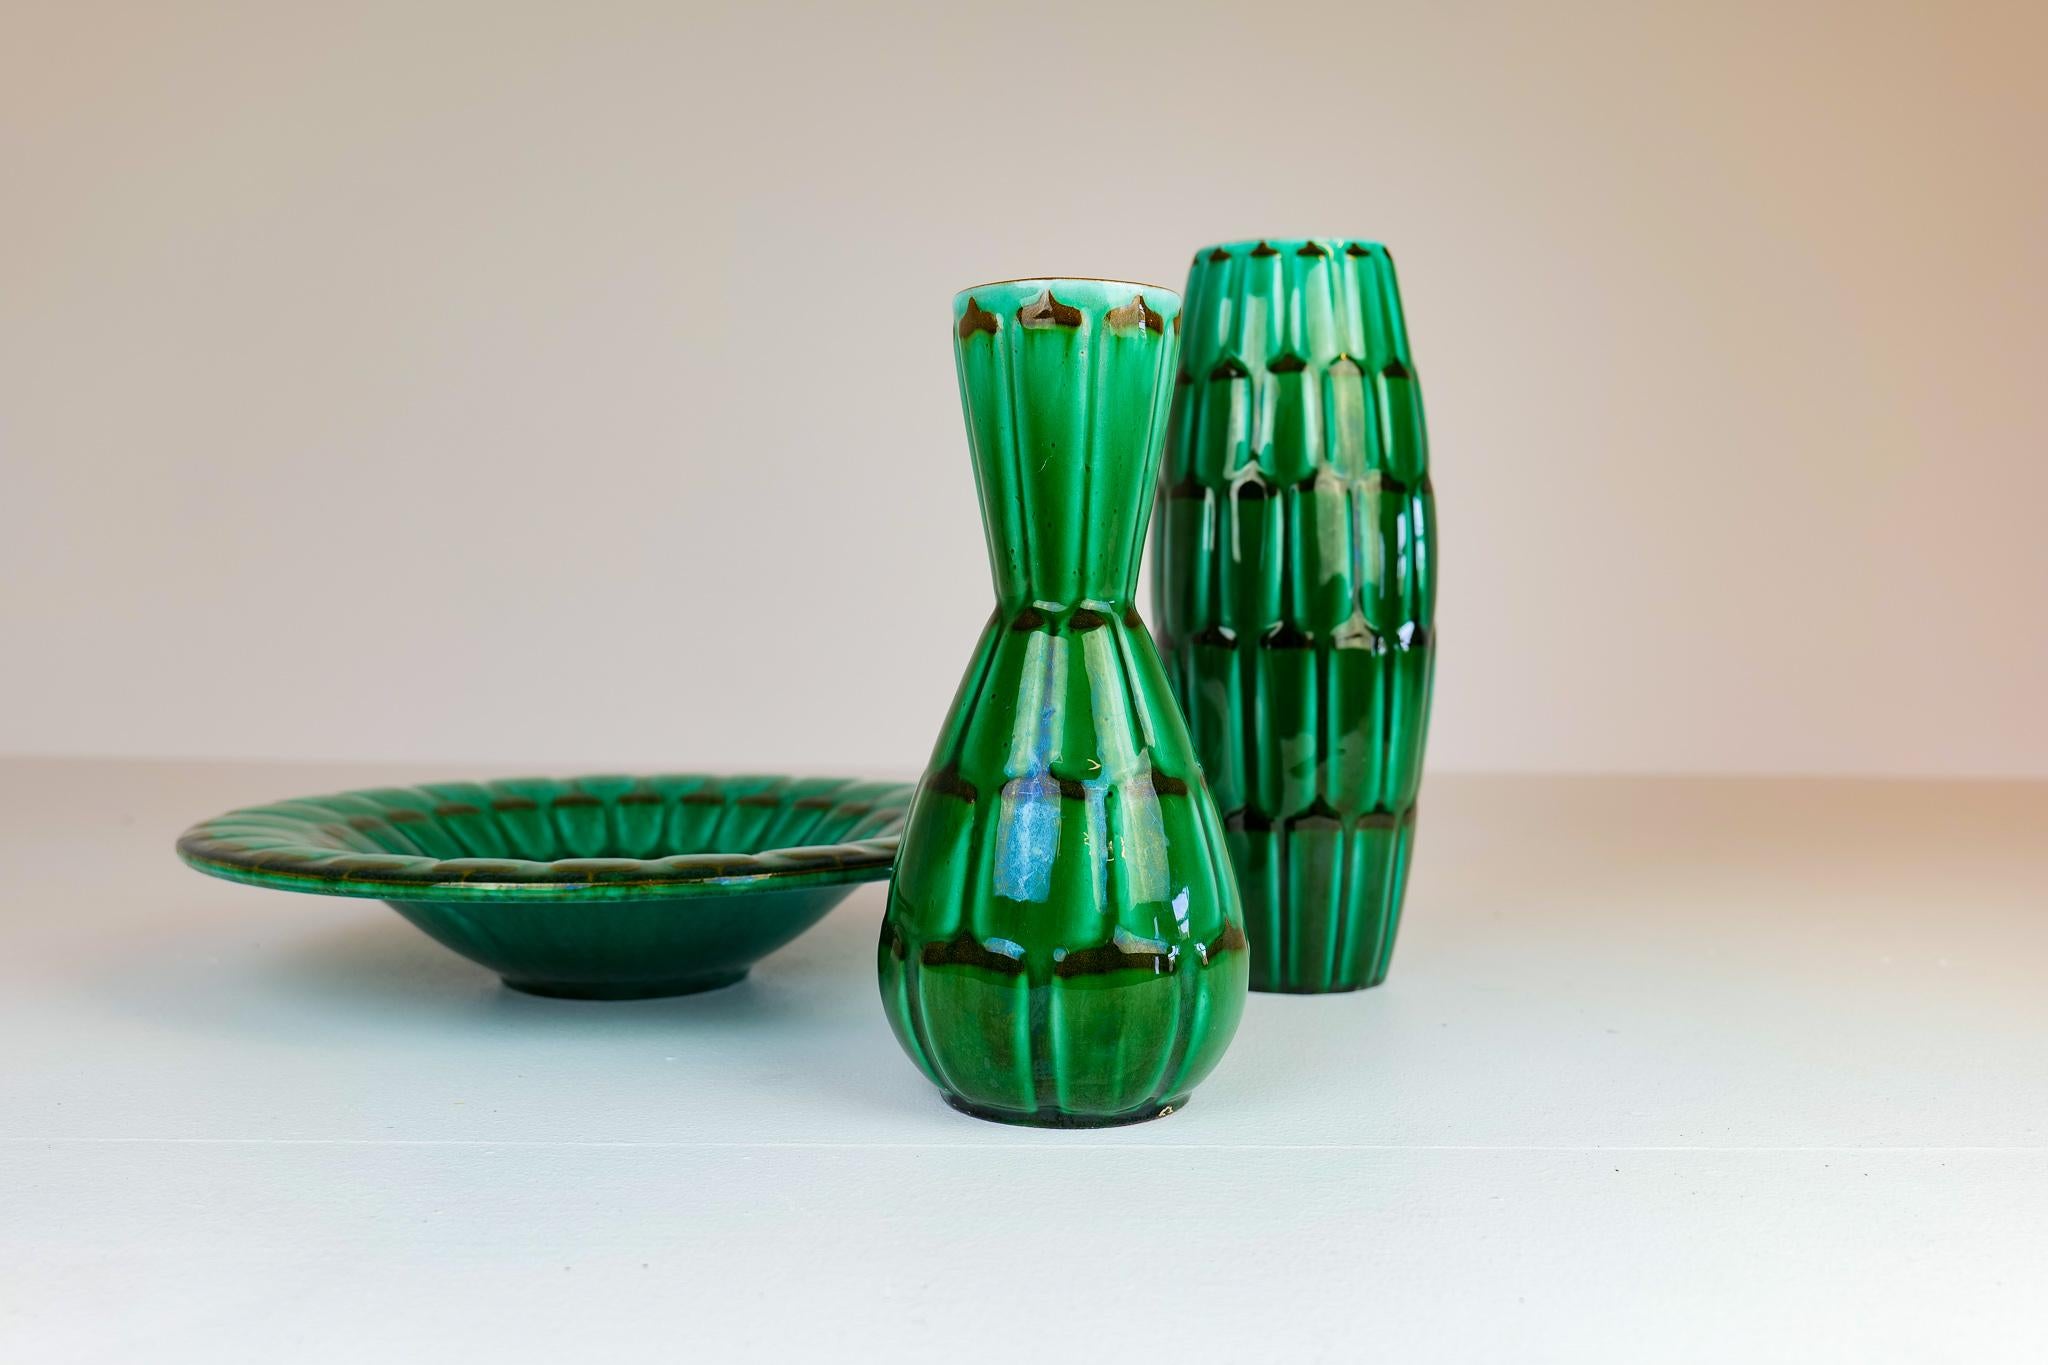 capri ceramics online